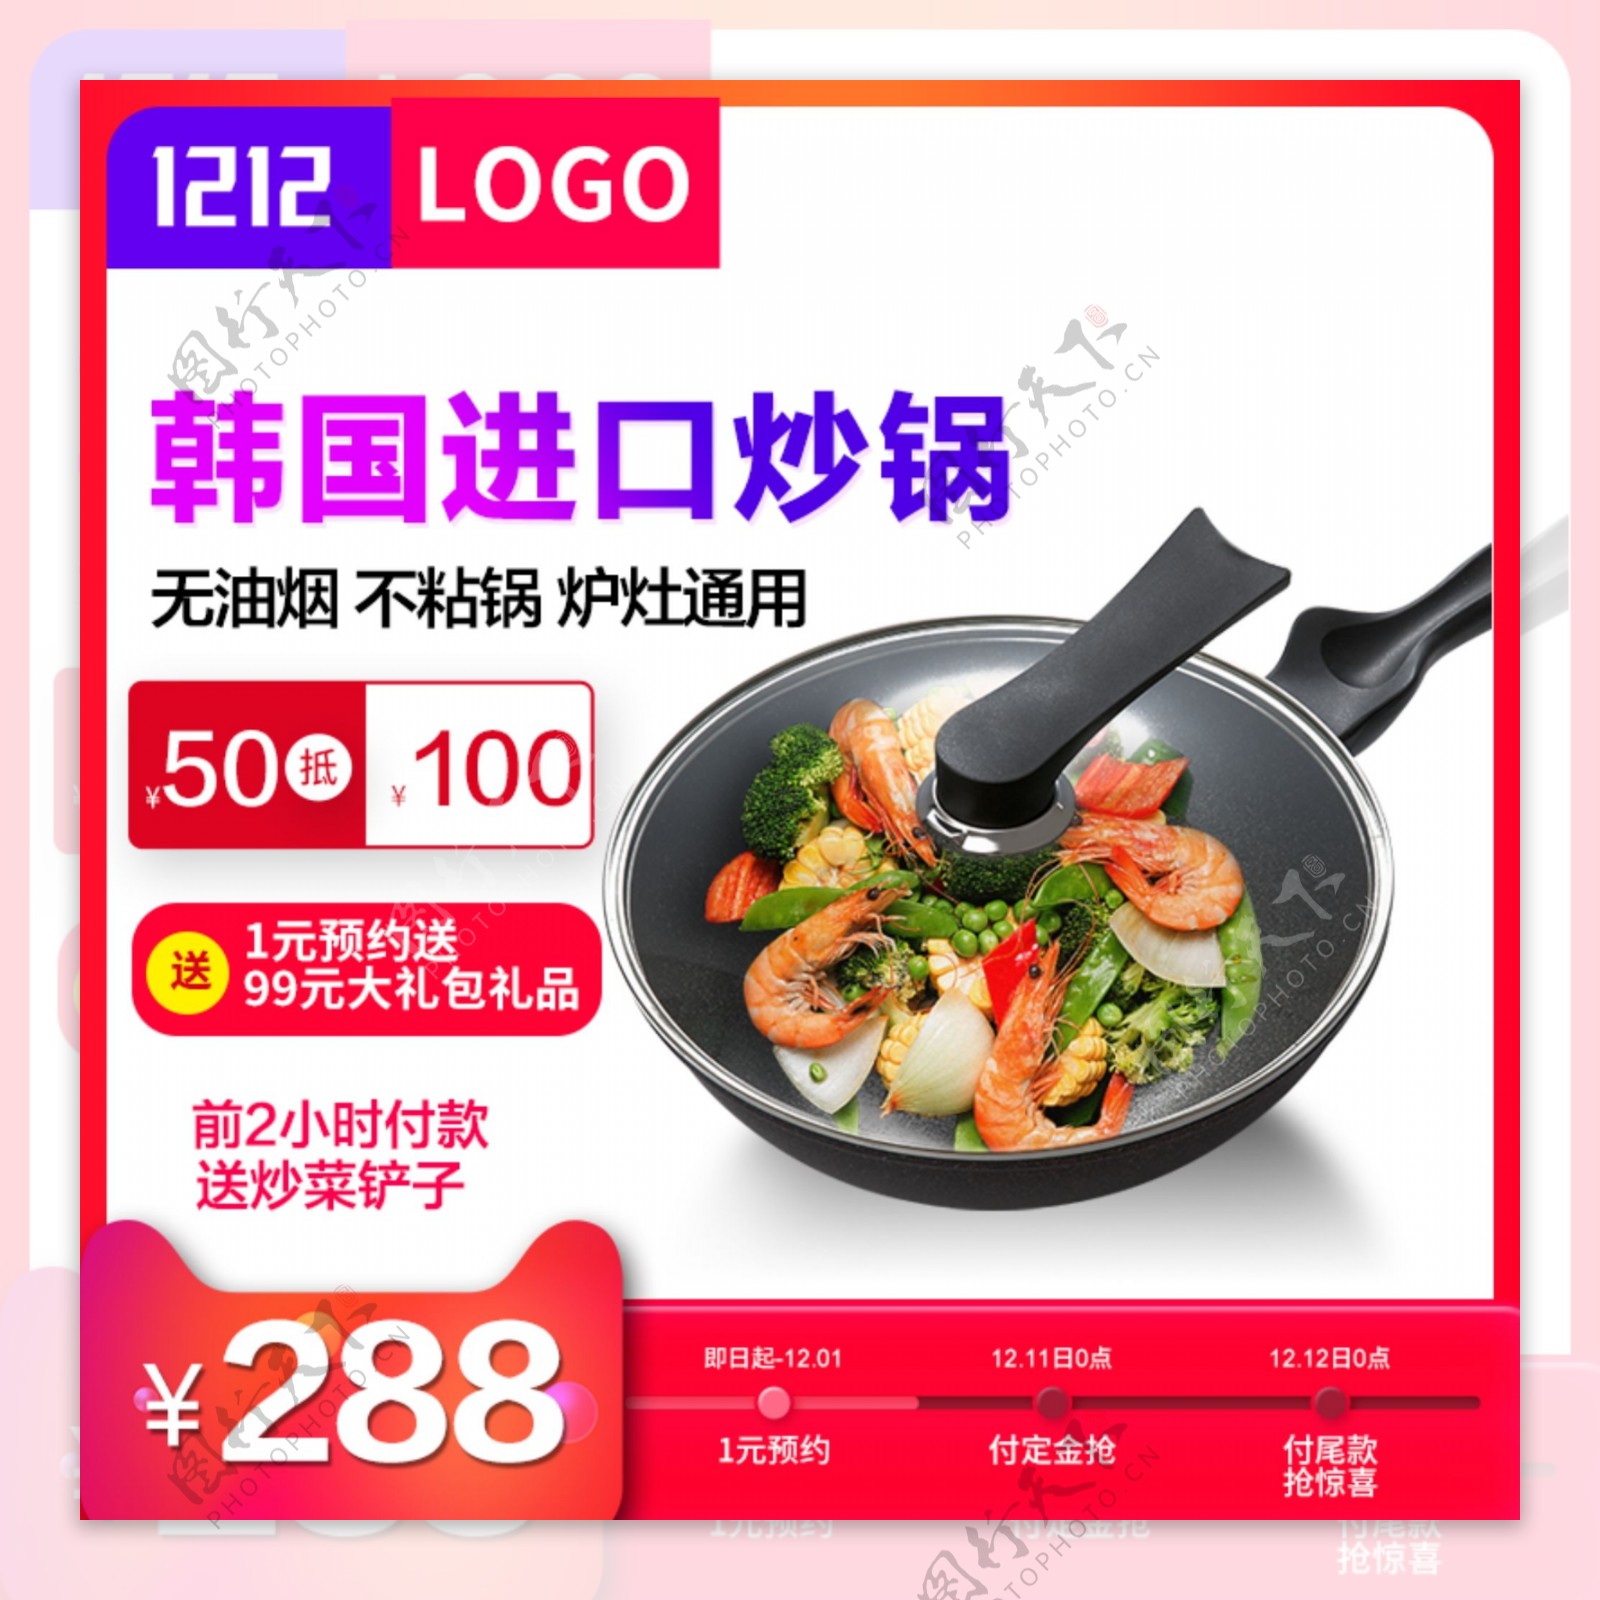 双12主图预售炒锅美味促销活动红色清爽风